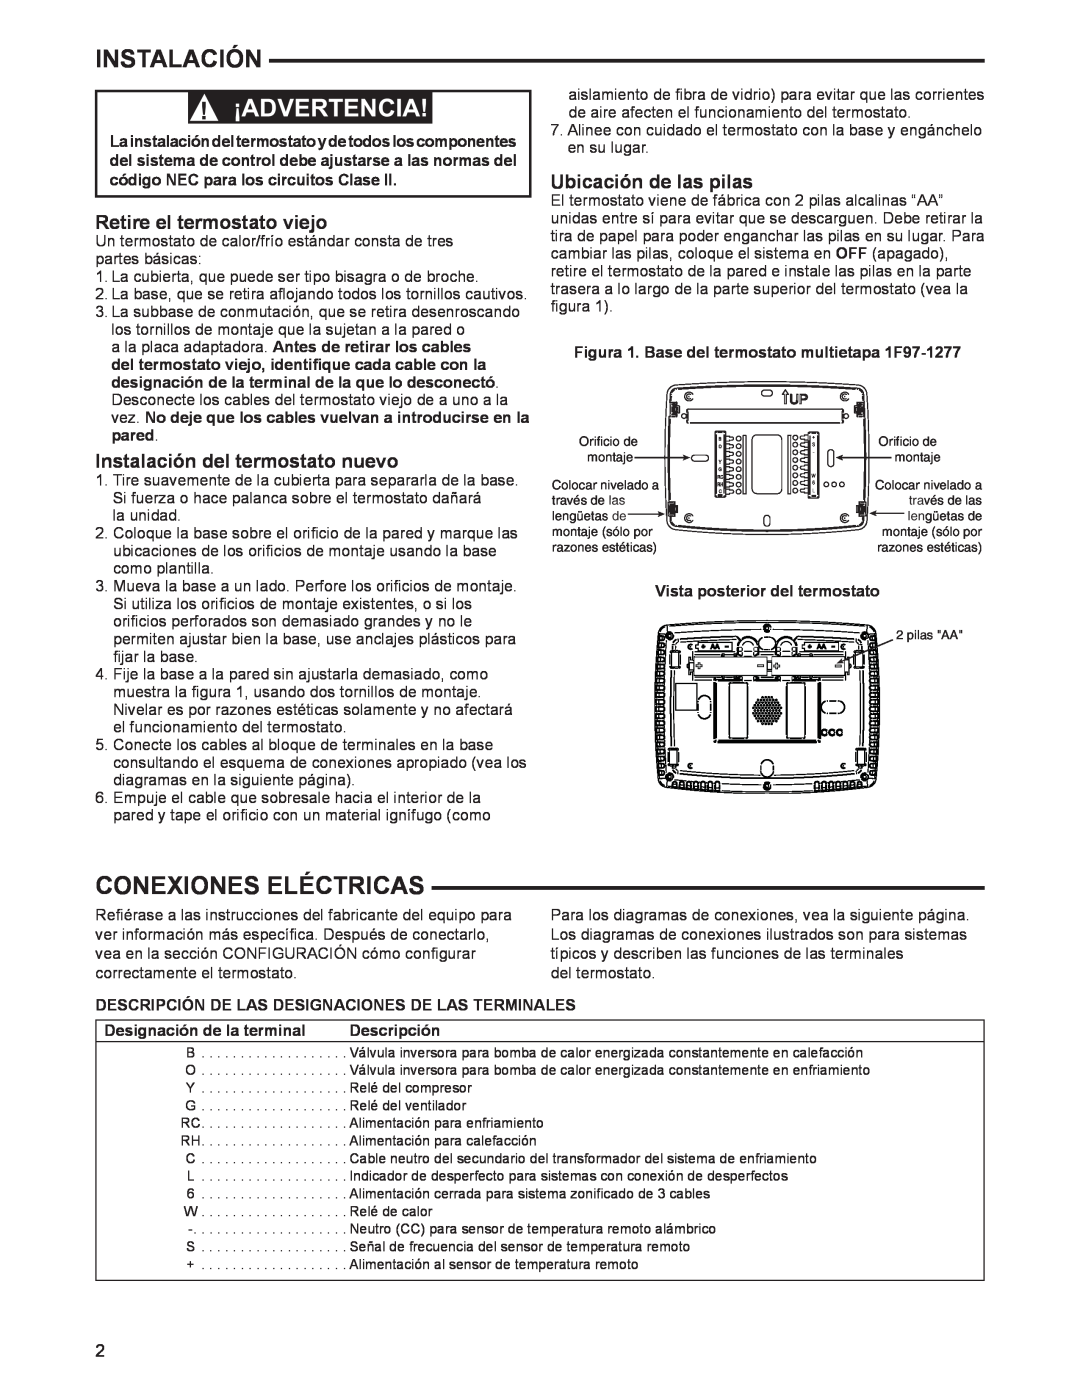 White Rodgers 1F97-1277 manual Instalación, ¡Advertencia, Conexiones Eléctricas, Retire el termostato viejo, Descripción 